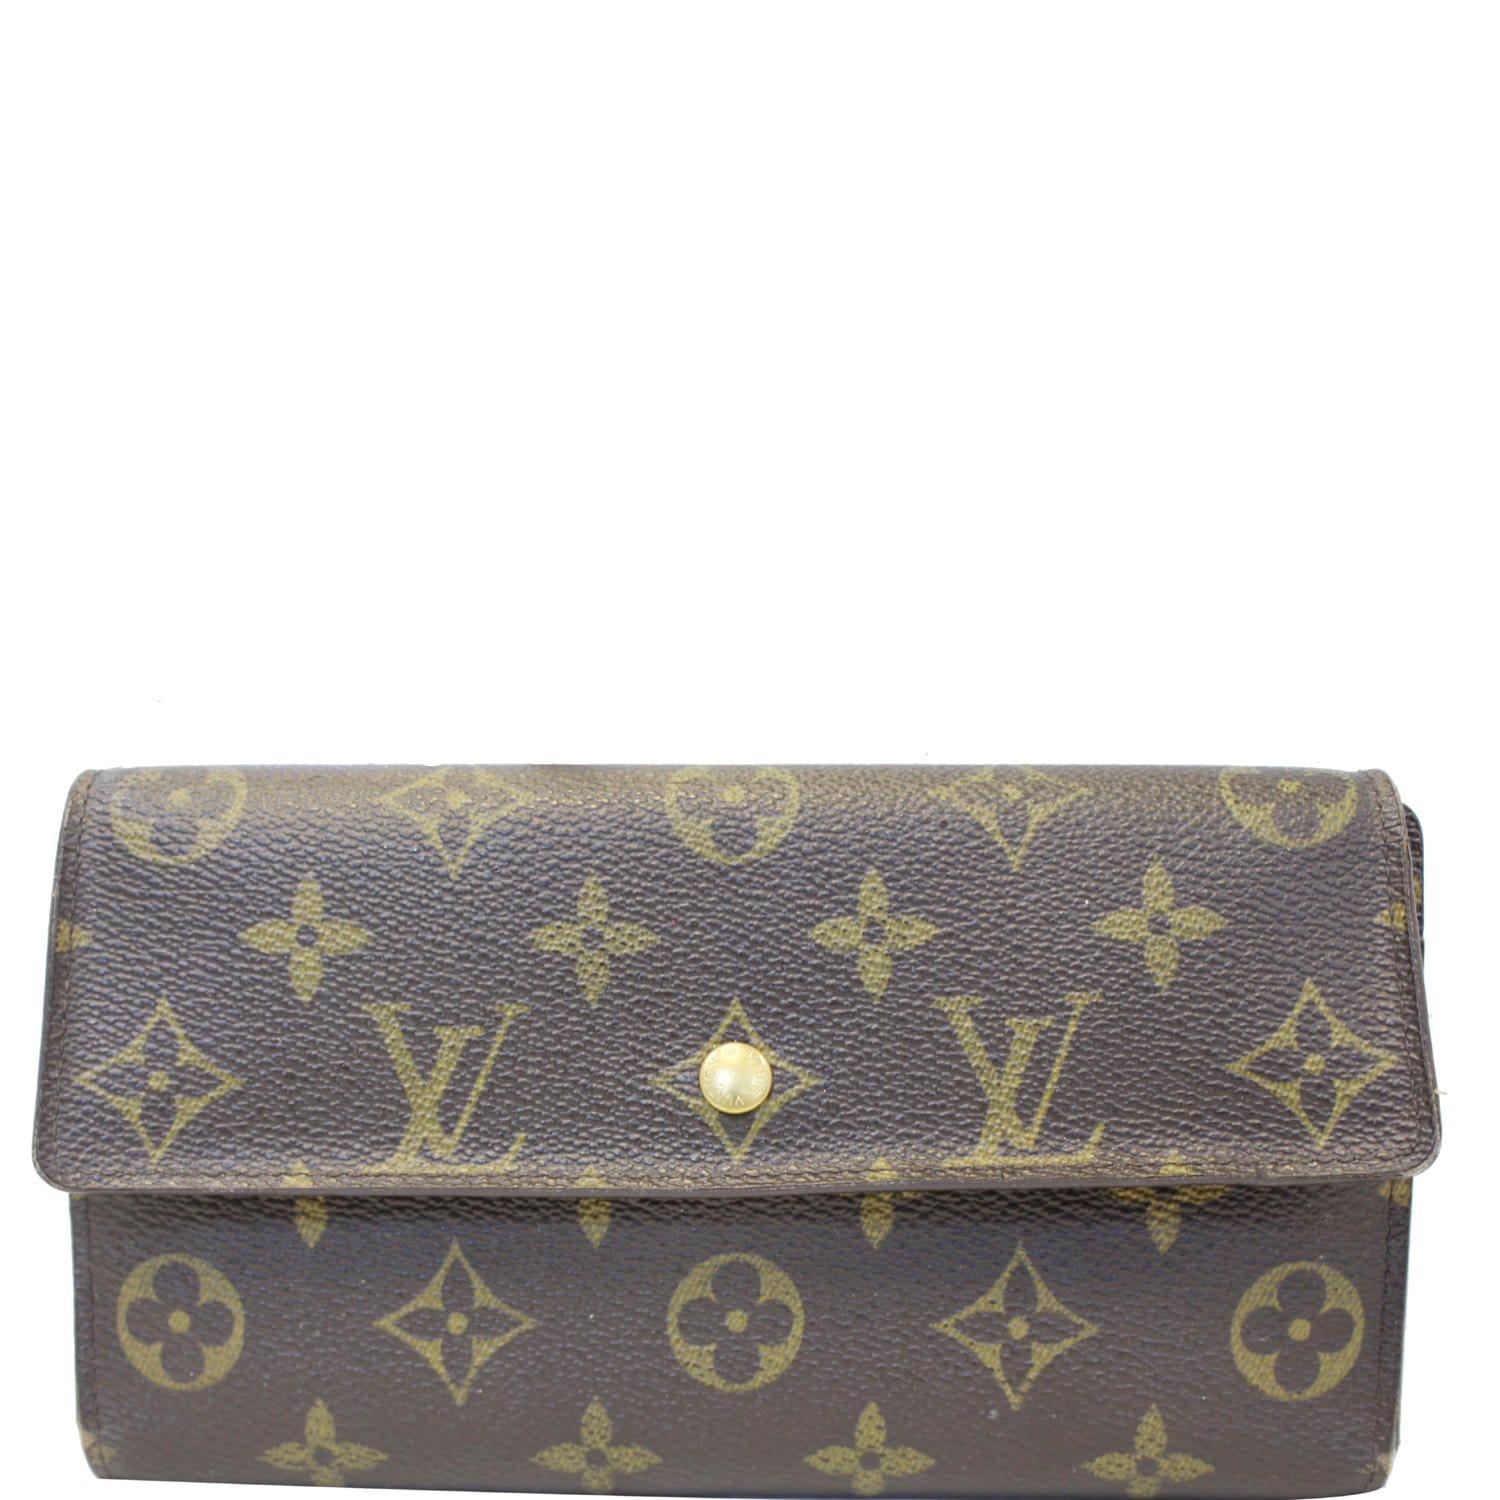 Preowned Authentic Louis Vuitton Monogram Epi Porte Long Wallet